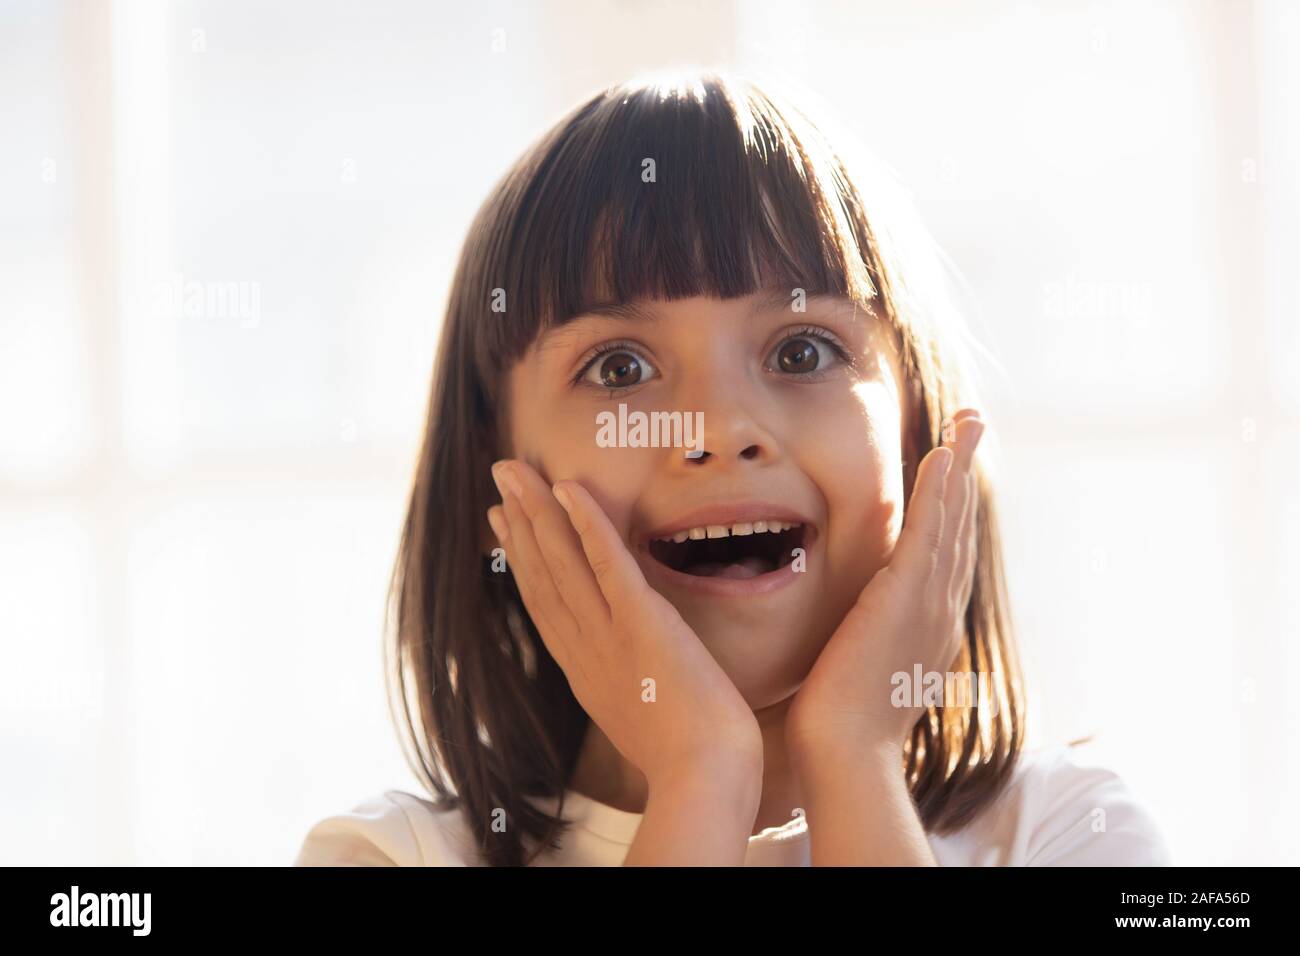 Kopf geschossen Portrait von überrascht aufgeregten kleinen niedliche Mädchen Kind Stockfoto